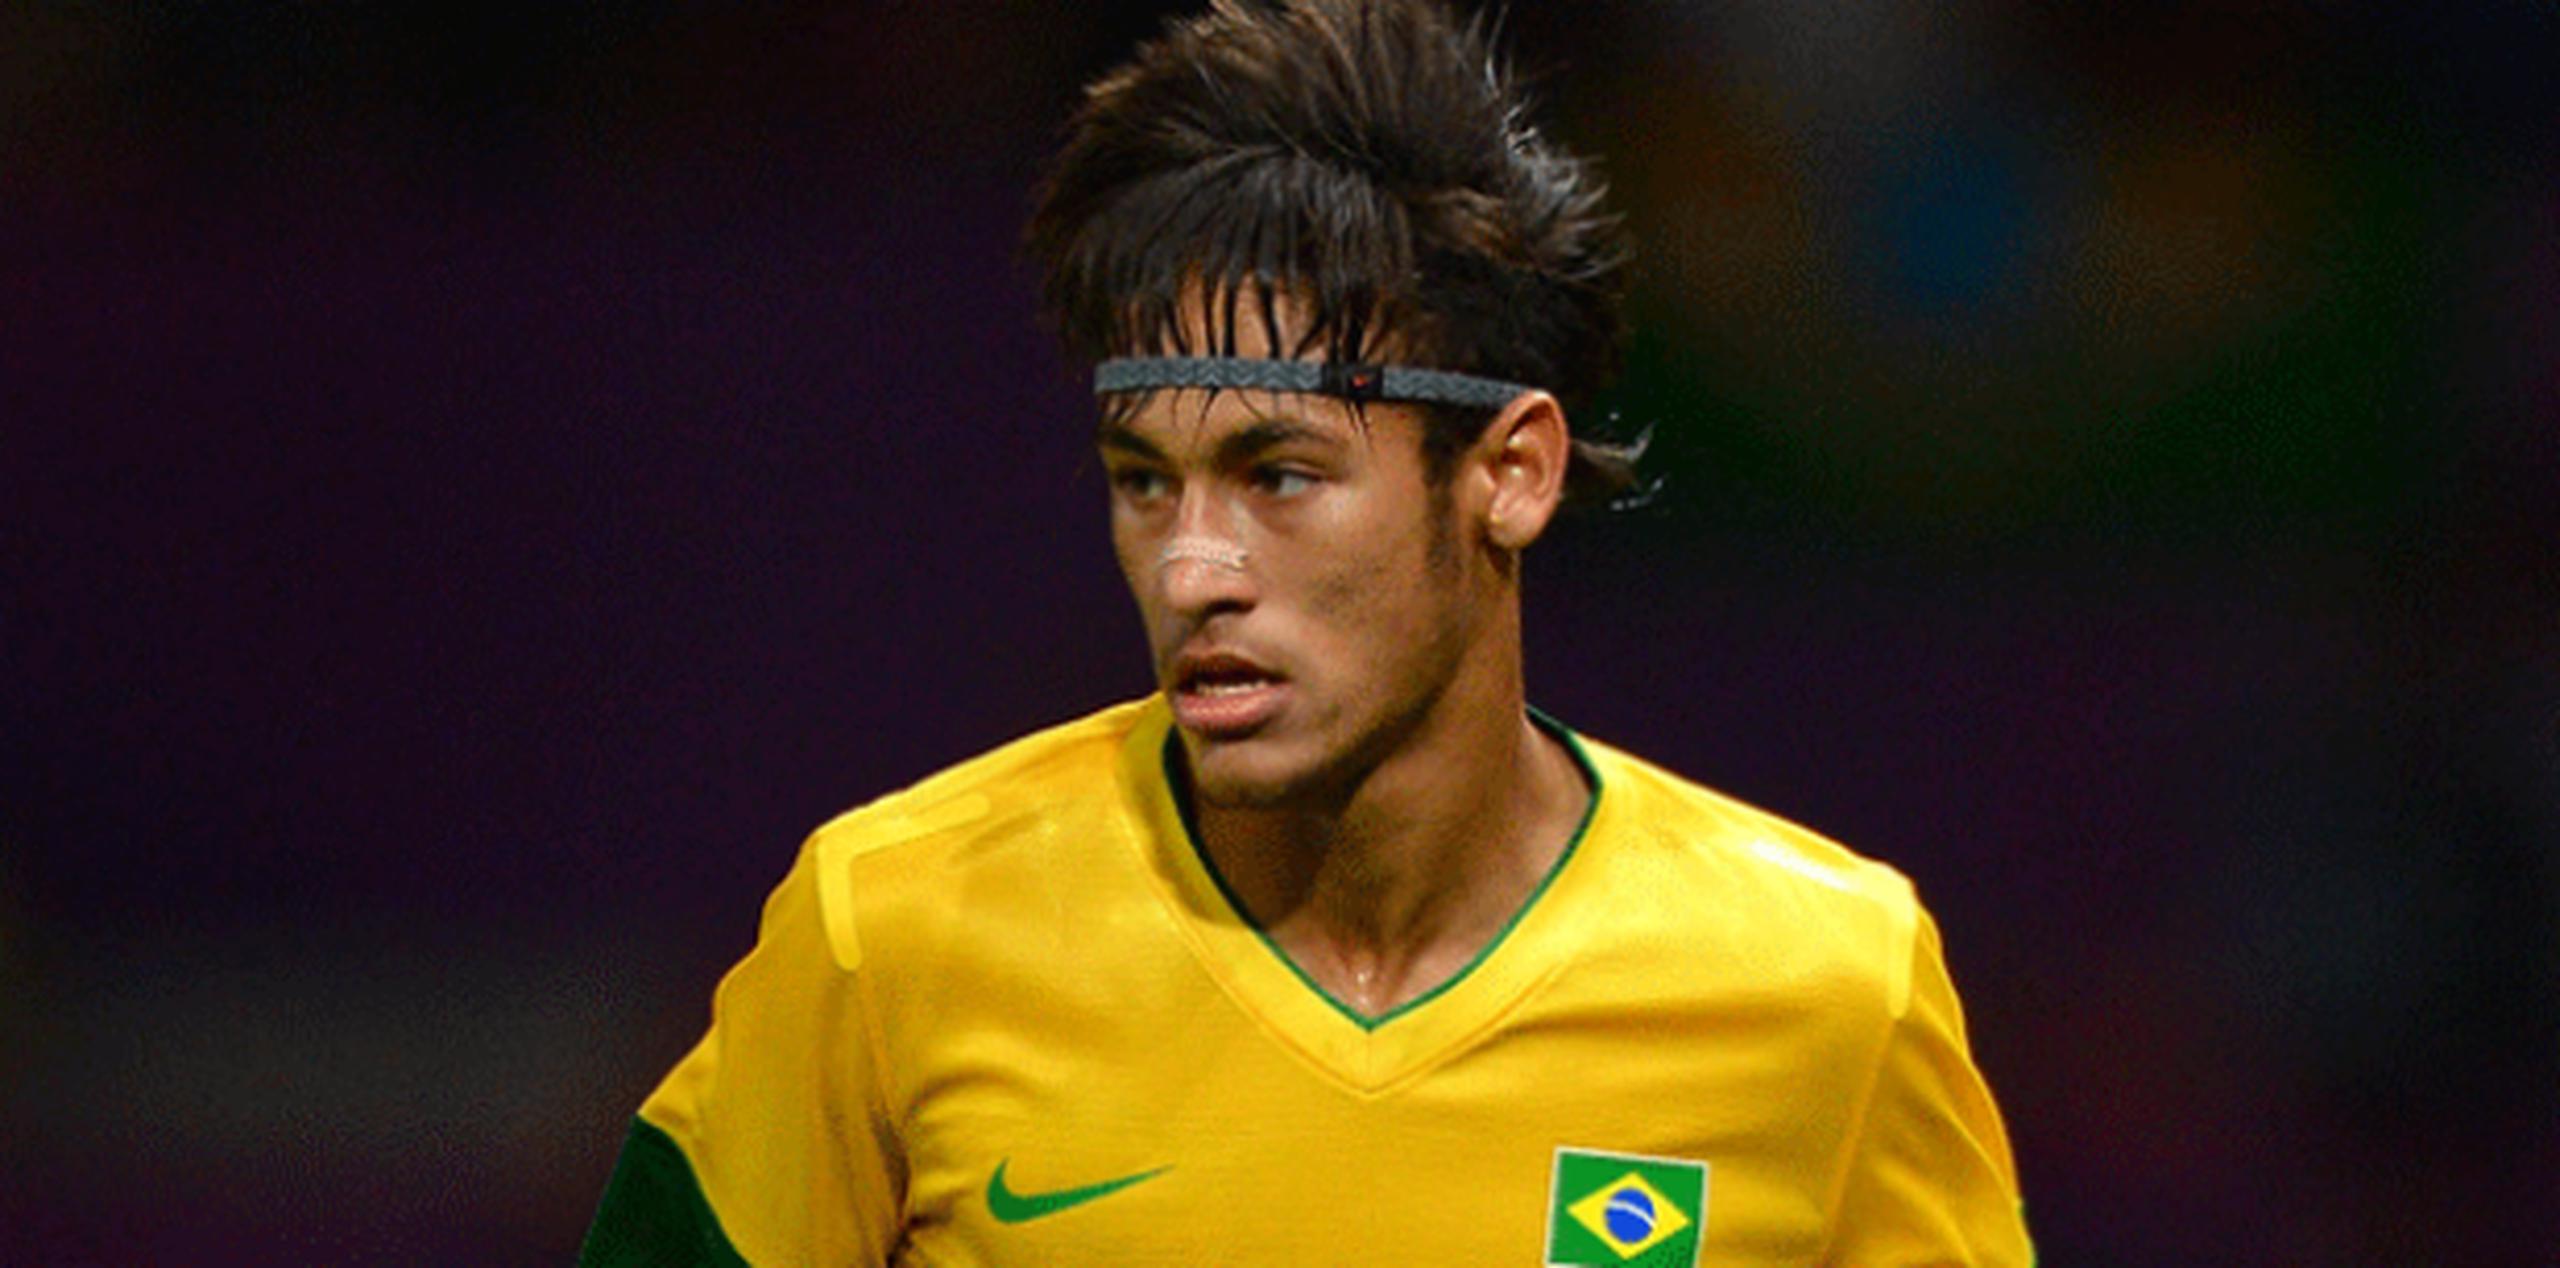 Neymar aterrizó a Barcelona procedente del Santos en 2013. El futbolista se ha convertido en el mejor socio de Lionel Messi. Pero las dudas sobre el coste de su fichaje, los contratos con el Santos y el padre del jugador planearon casi desde su llegada. (Archivo)